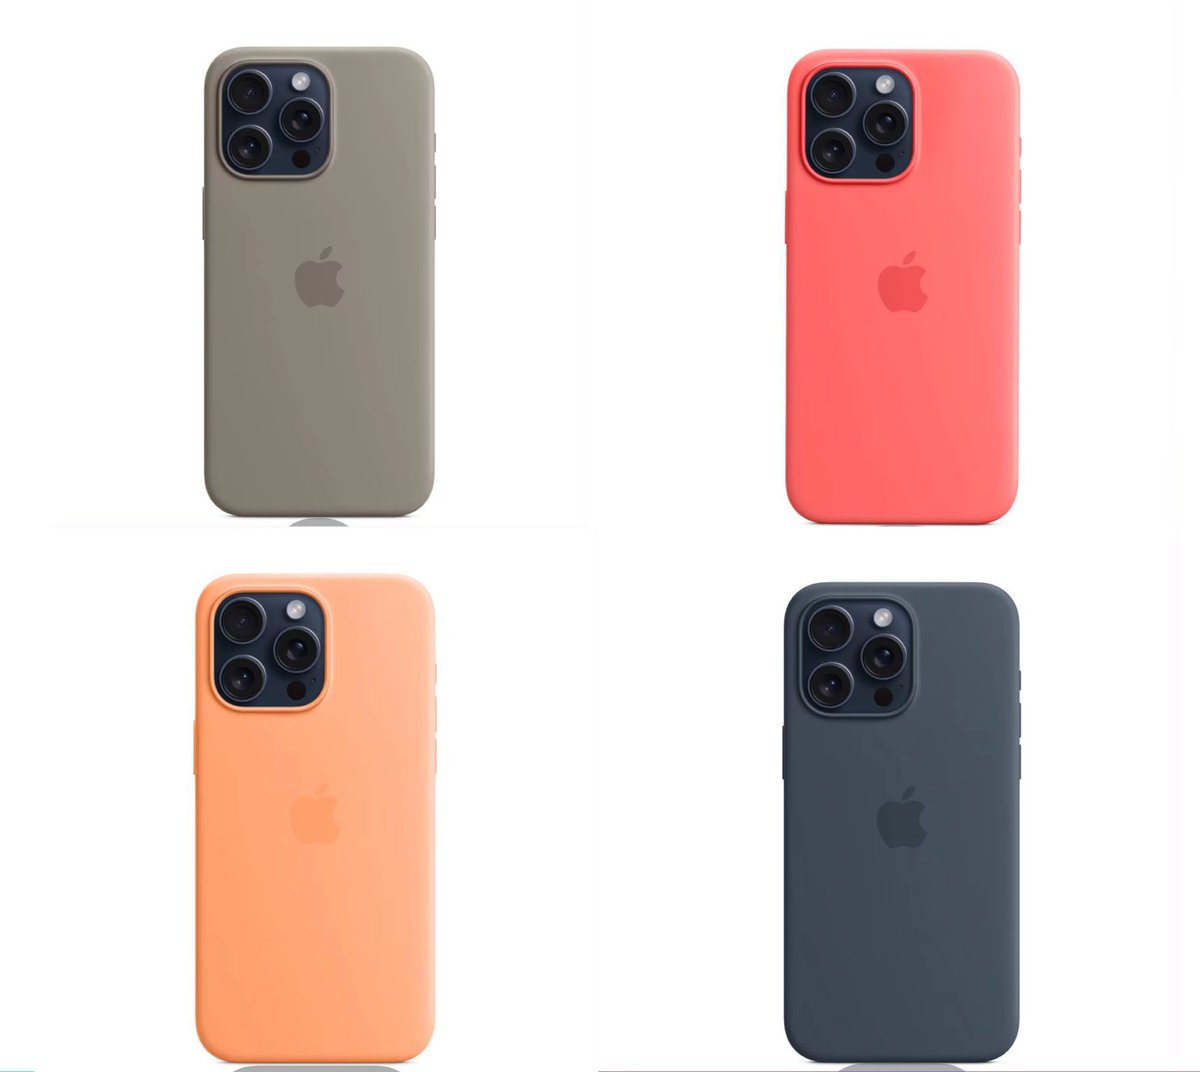 อย่าไปซื้อราคาเต็มนะ เคสไอโฟนของ Apple ใน Lazada ลด 50% ทุกสี ประหยัดไปพันกว่าเลย 🫶🏻